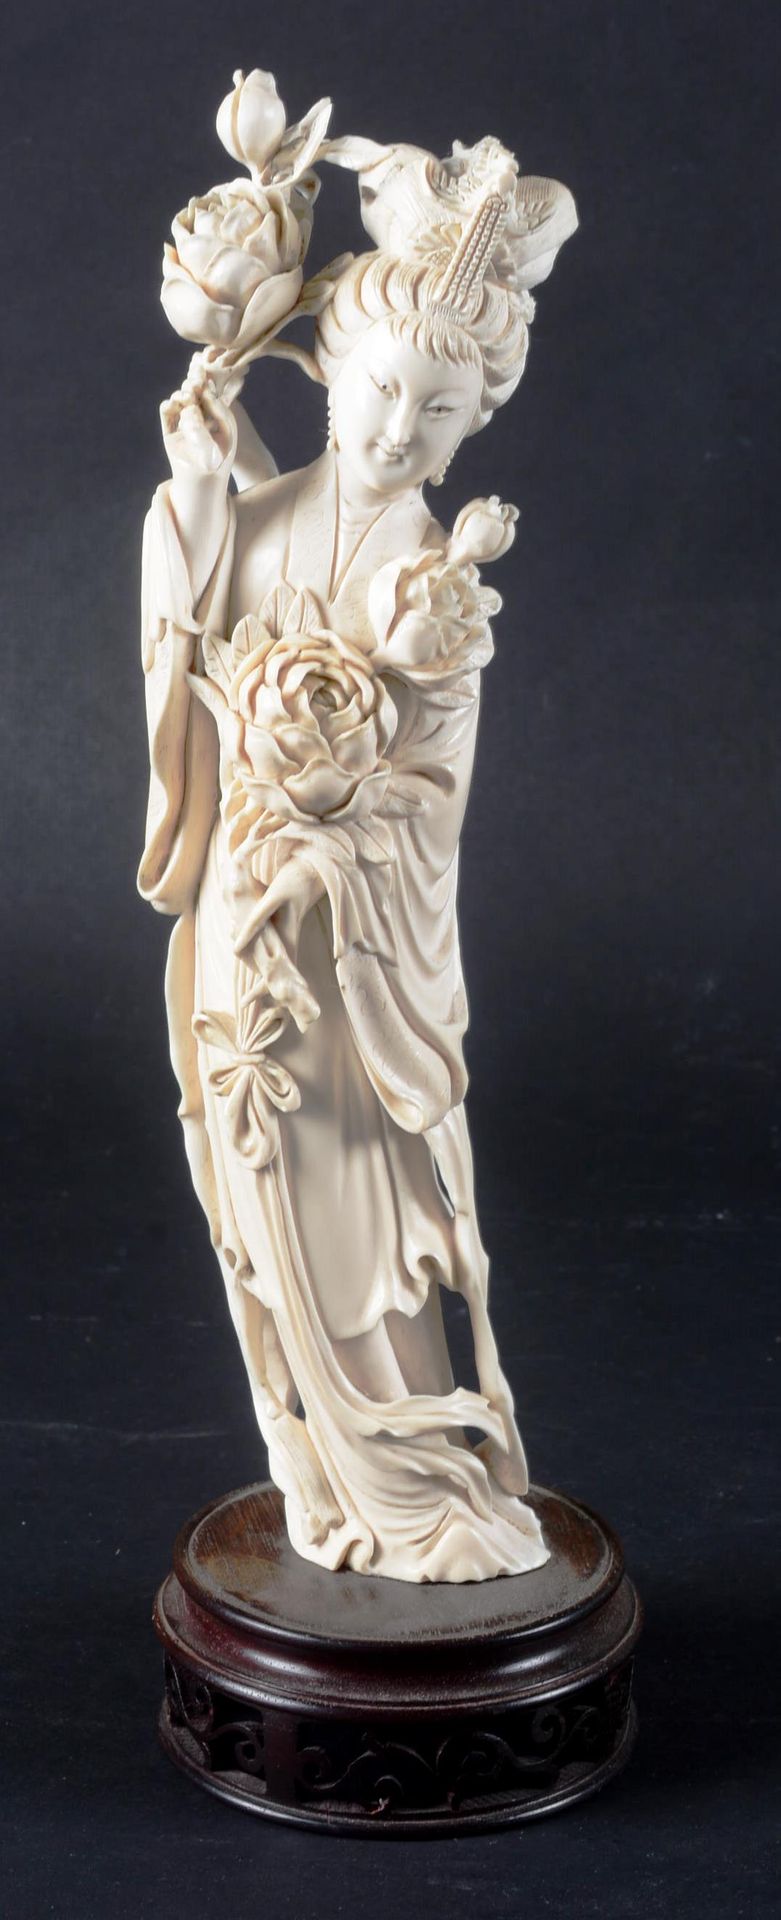 Grande Guanyin en ivoire sculpté CHINA.

Gran Guanyin de marfil tallado en un di&hellip;